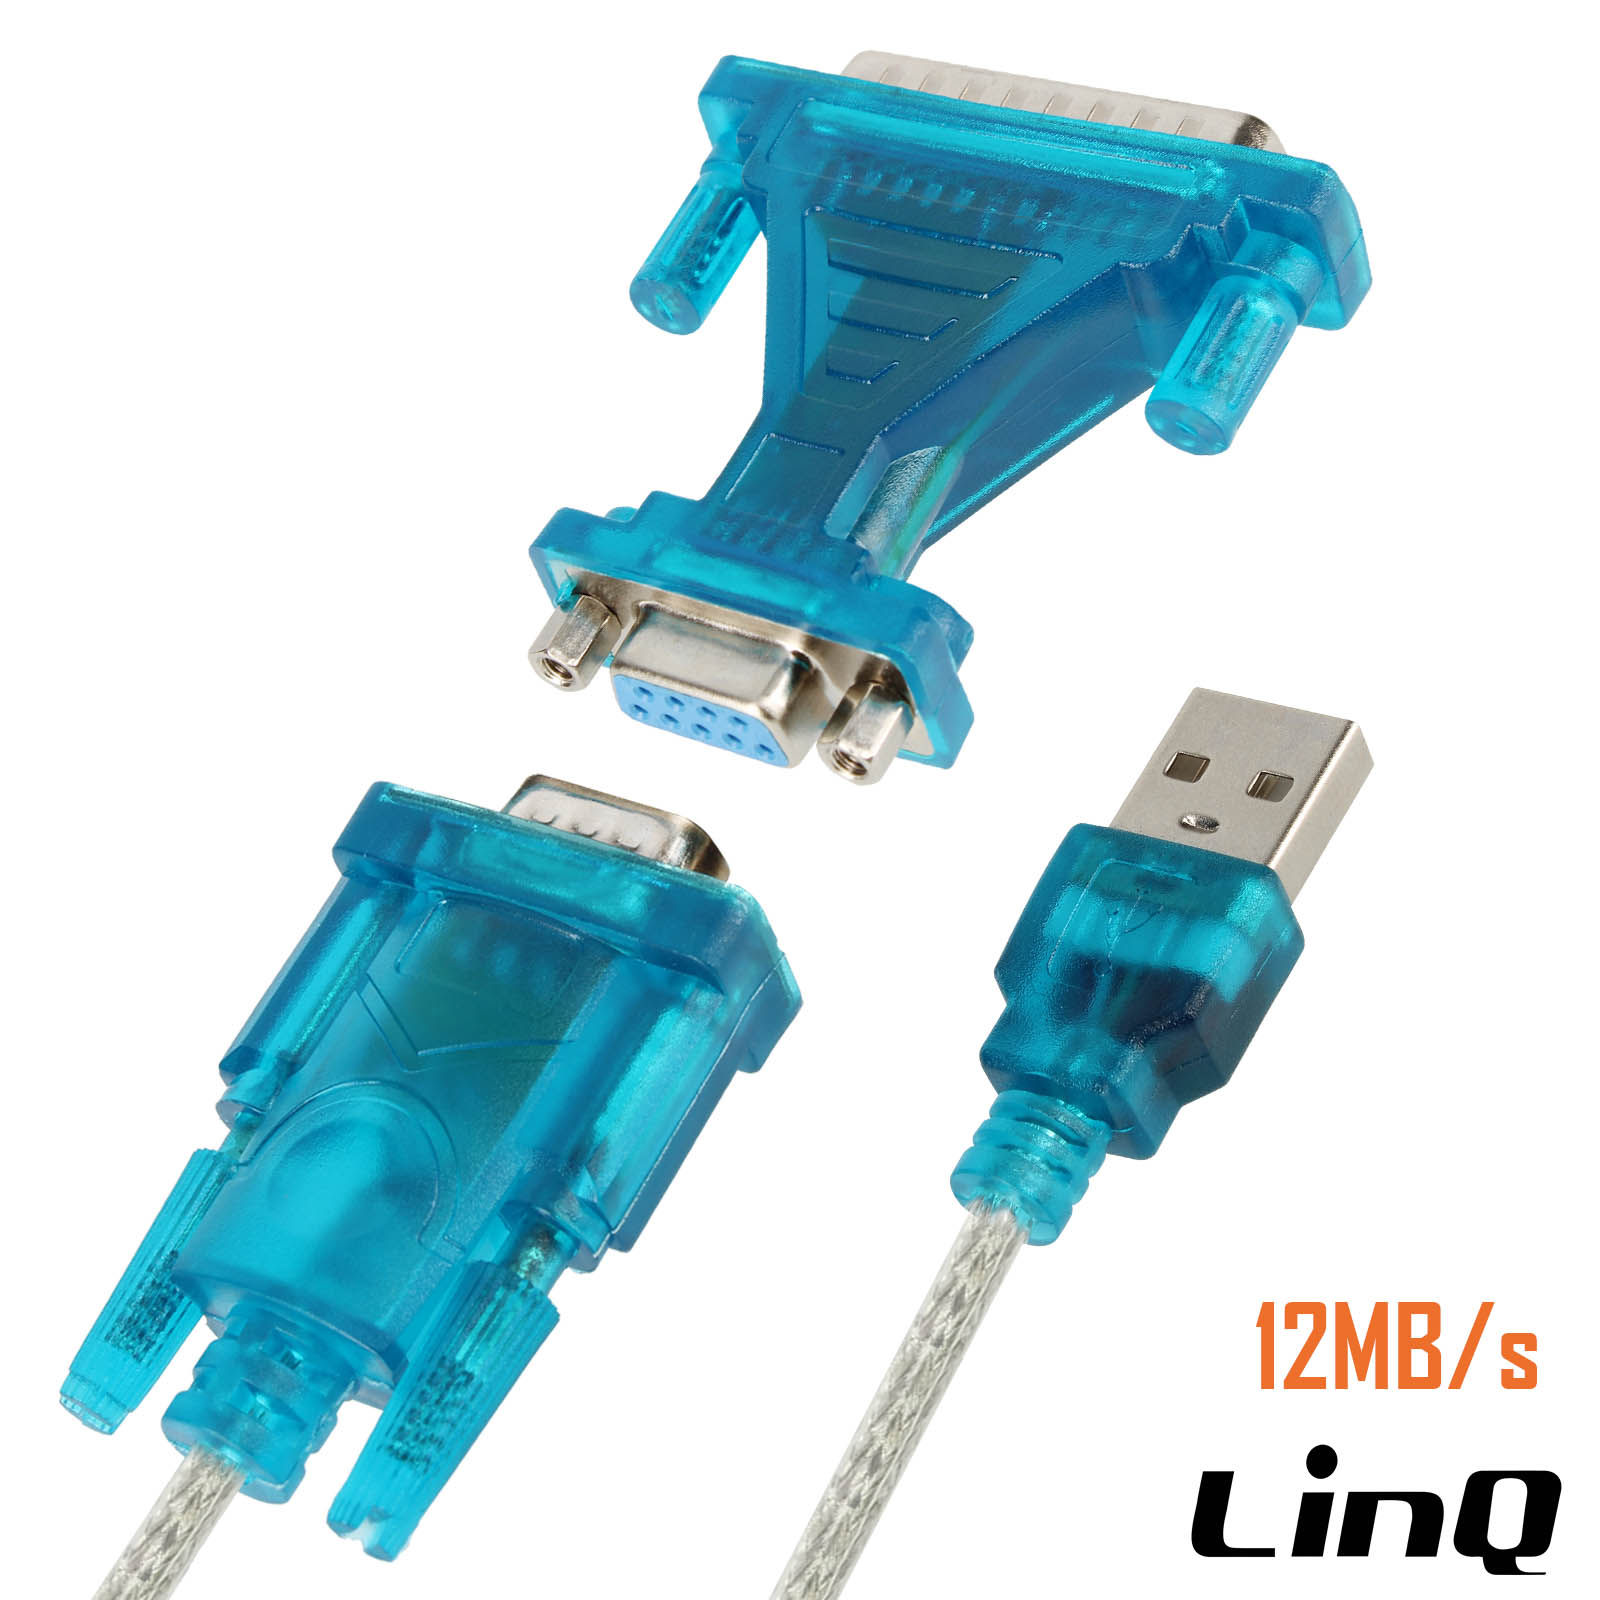 Câble de connexion imprimante série RS232 DB9/DB9